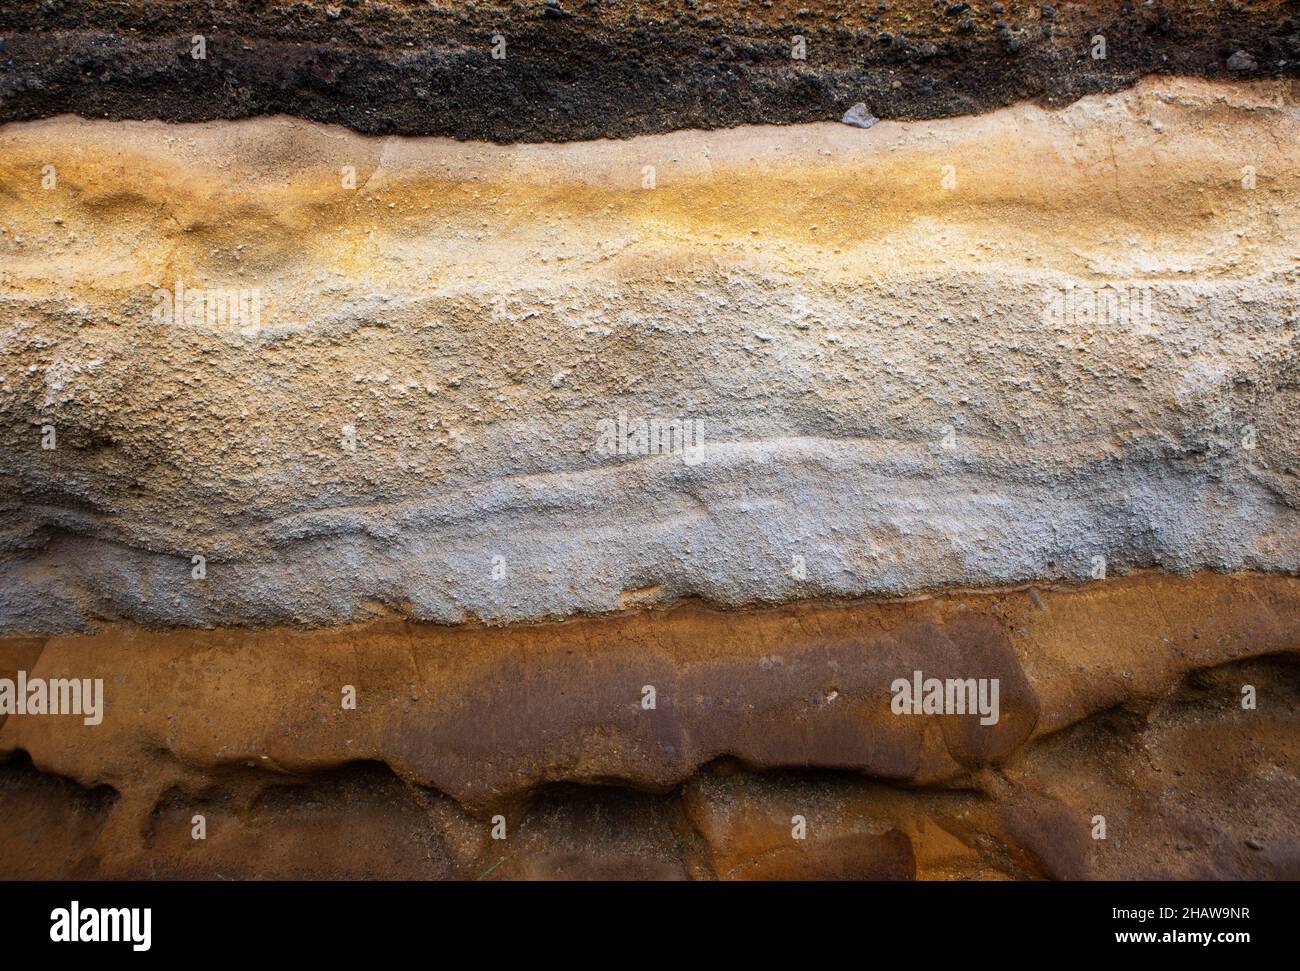 Eroded sandstone, Rocha da Relva, Sao Miguel Island, Azores, Portugal Stock Photo